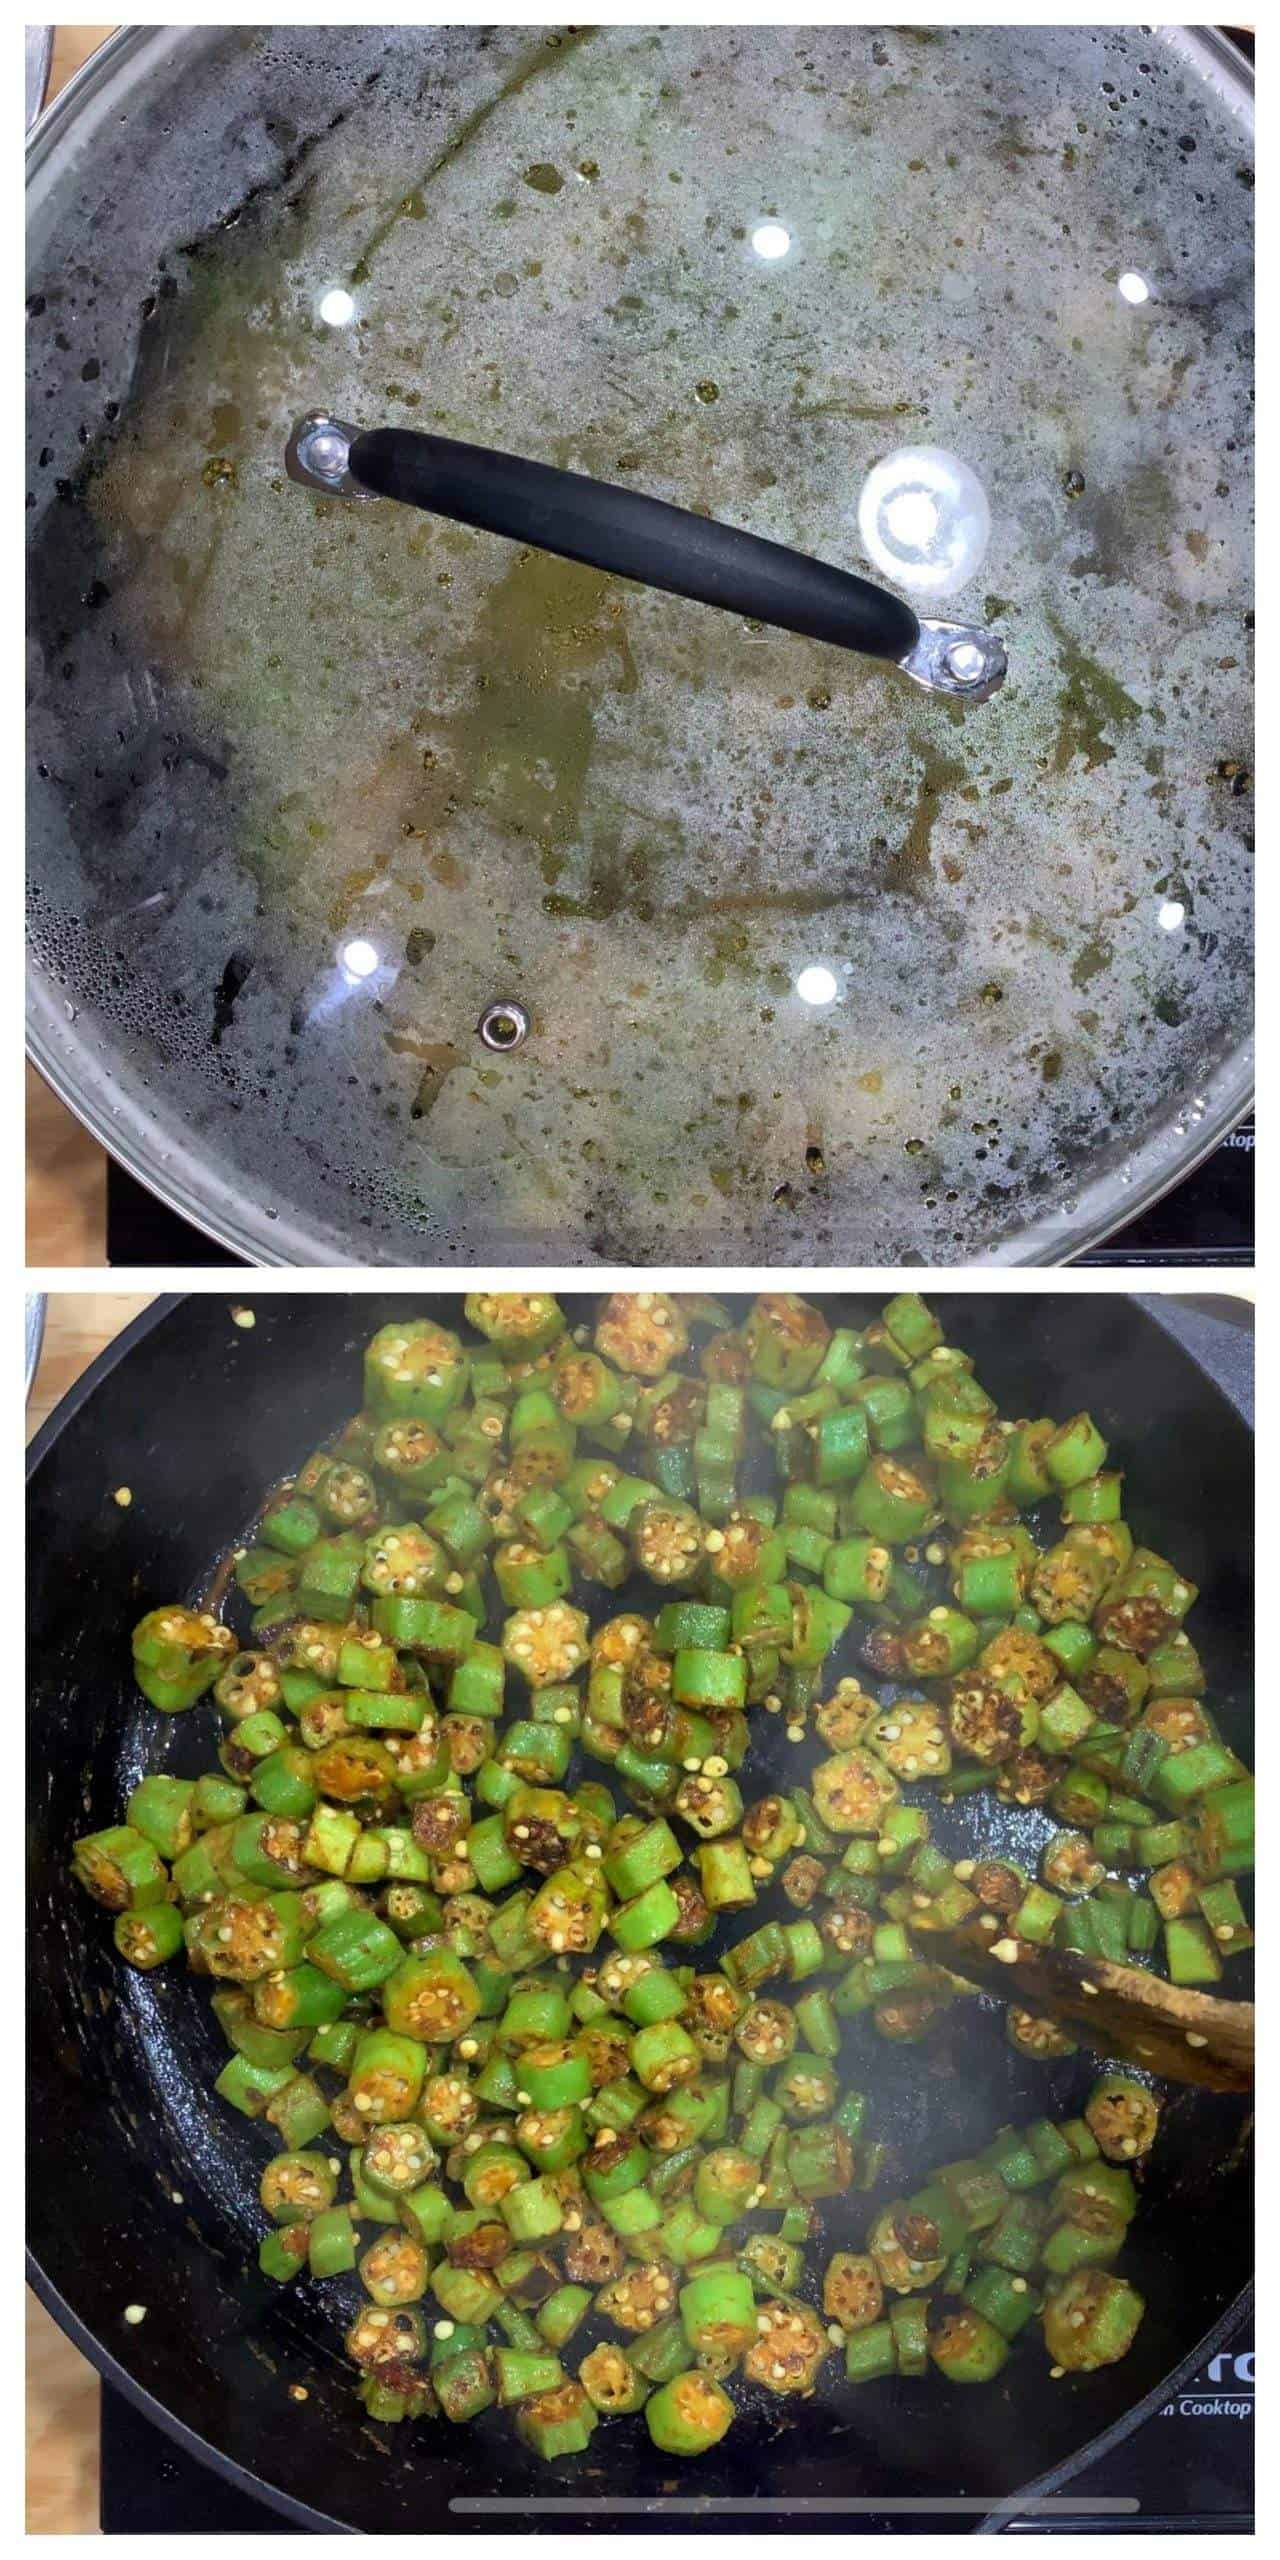 Cooking okra / vendakkai in cast iron pan